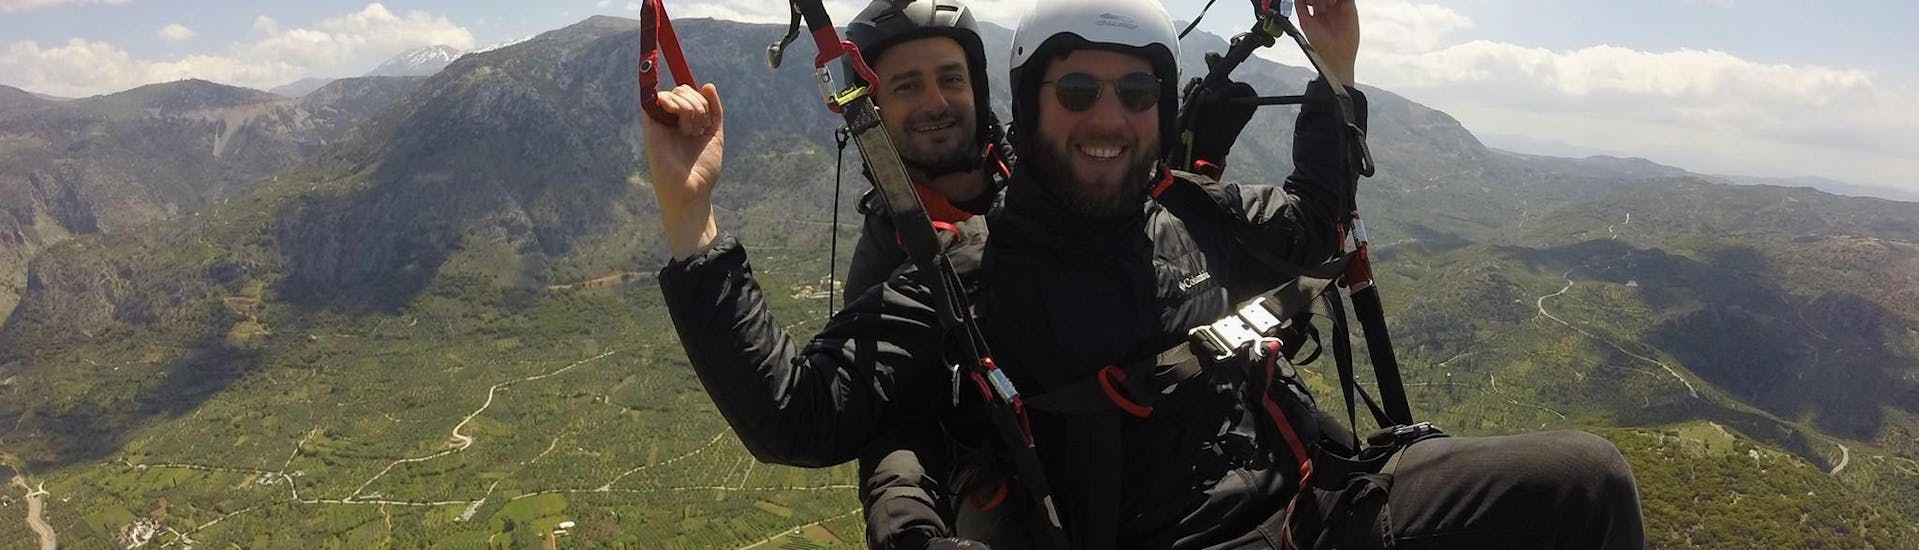 Durante el vuelo en parapente biplaza sobre Chania, un hombre se lo pasa en grande volando con seguridad con un piloto biplaza certificado de Cretan Paragliding.